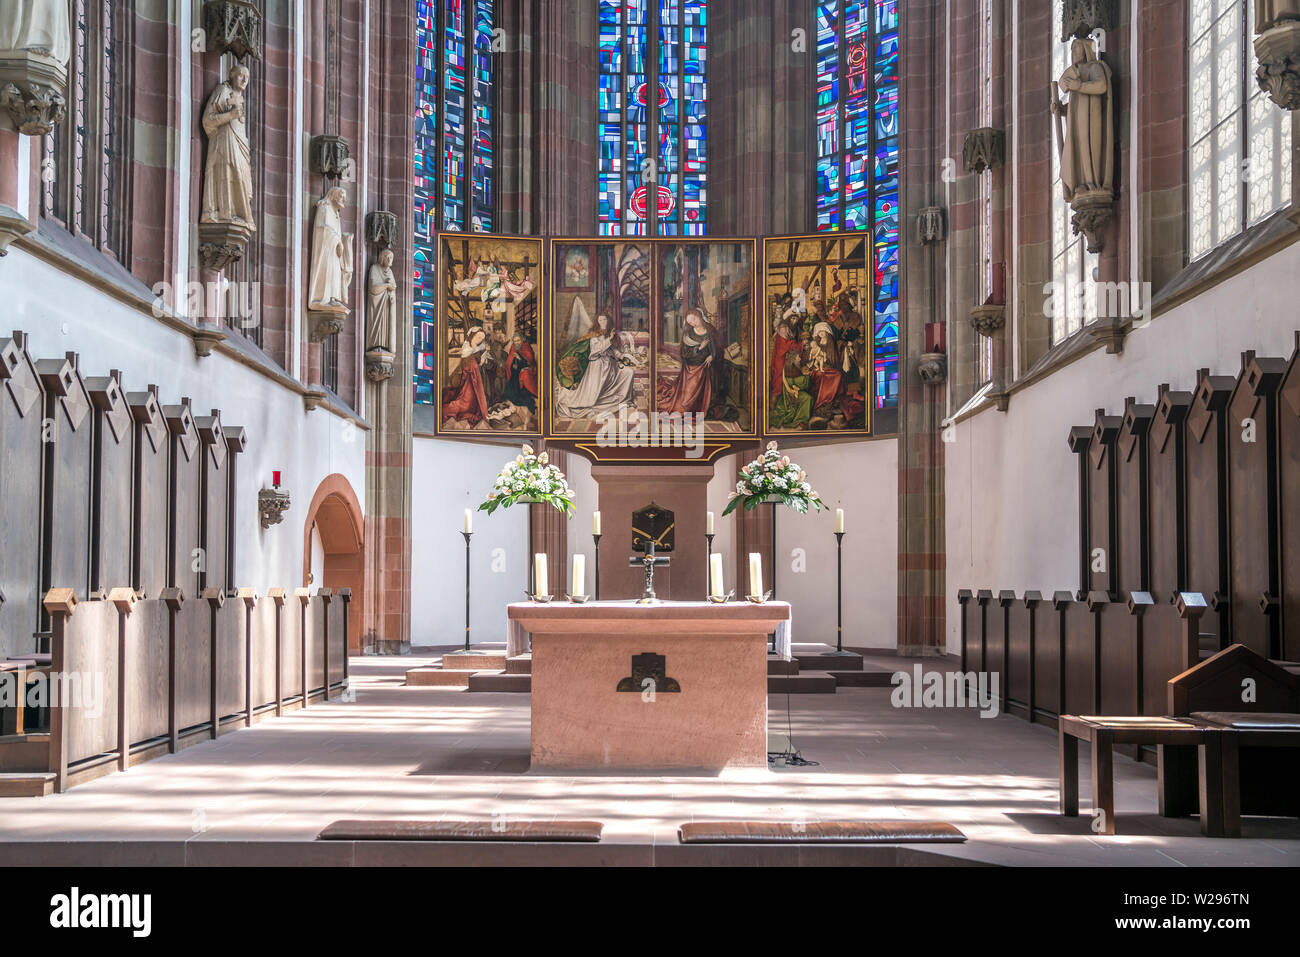 Altar der Marienkapelle Würzburg, Unterfranken, Bayern, Deutschland  |  Marienkapelle church altar,  Würzburg,  Lower Franconia, Bavaria, Germany Stock Photo